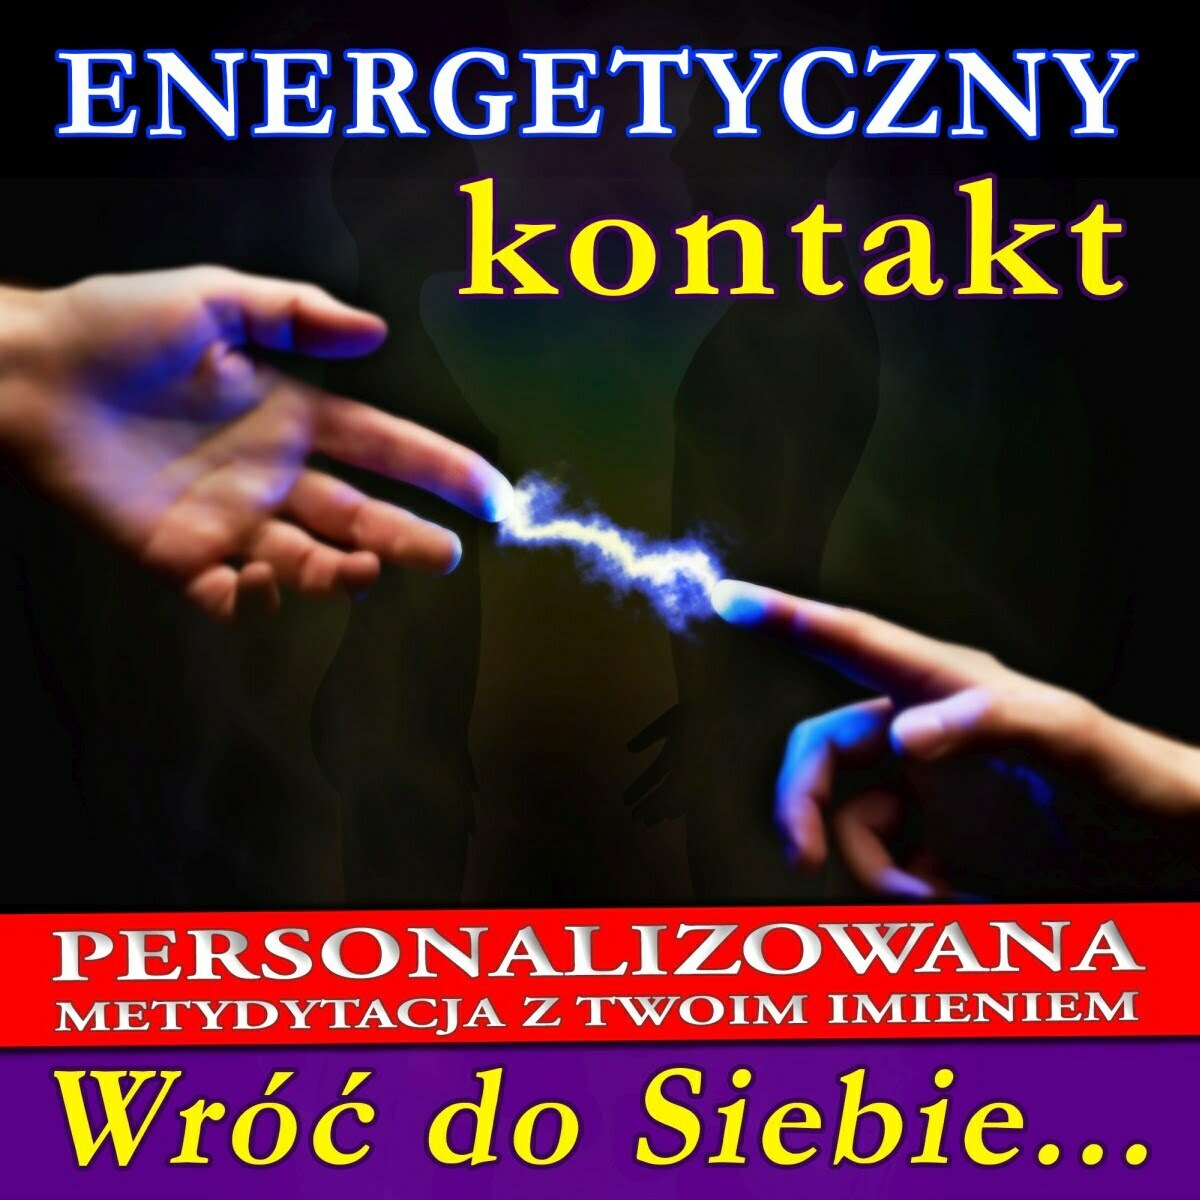 Energetyczny Kontakt, medytacja personalizowana